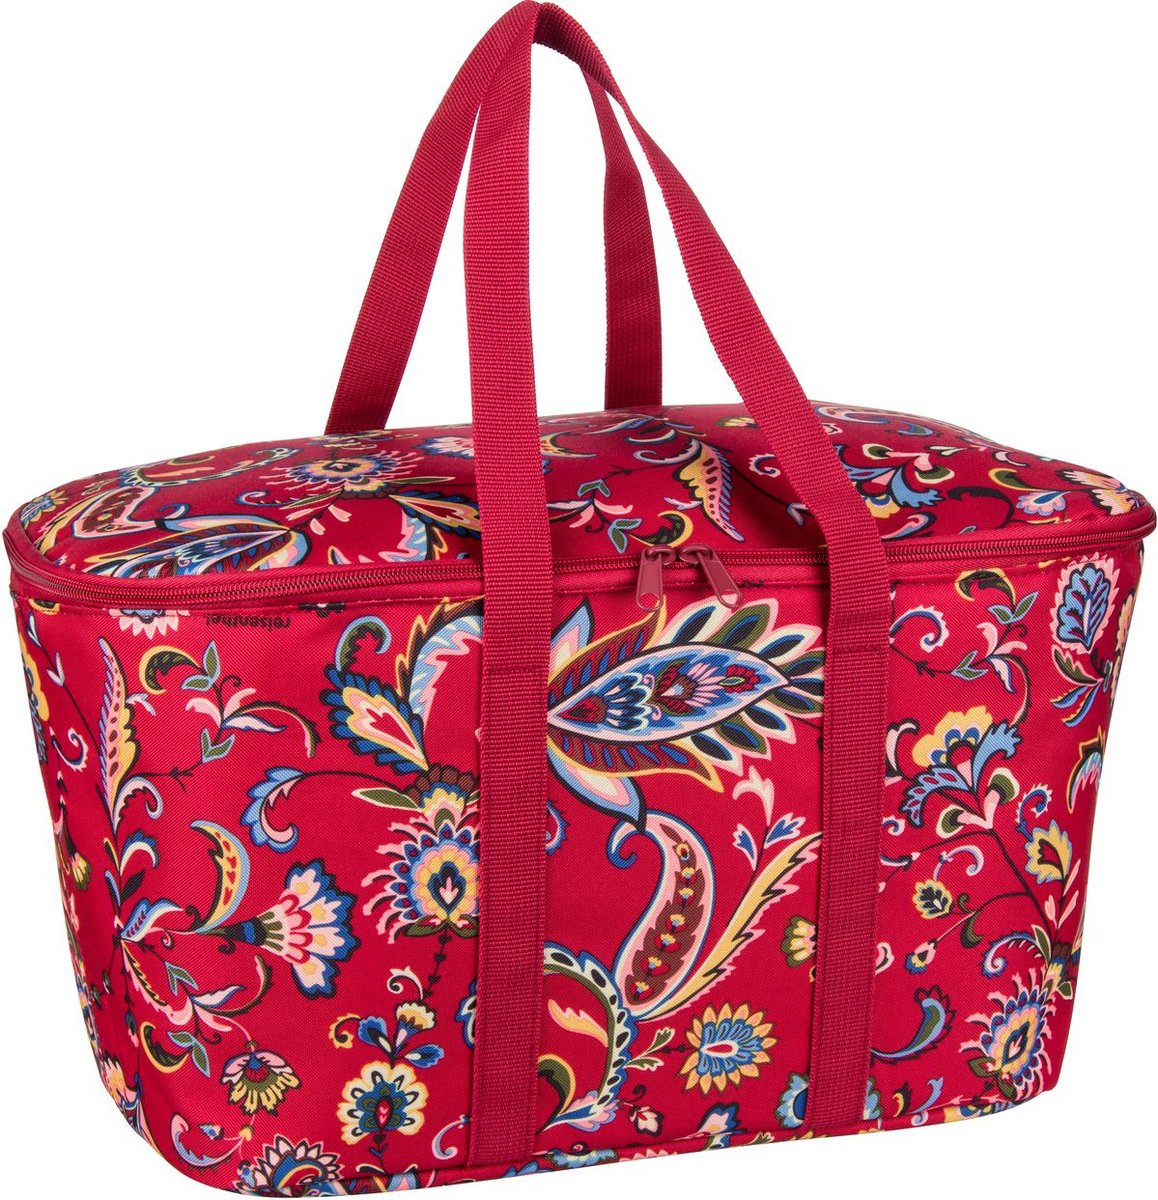 reisenthel Einkaufstasche coolerbag Paisley Ruby (20 Liter)  - Onlineshop Taschenkaufhaus